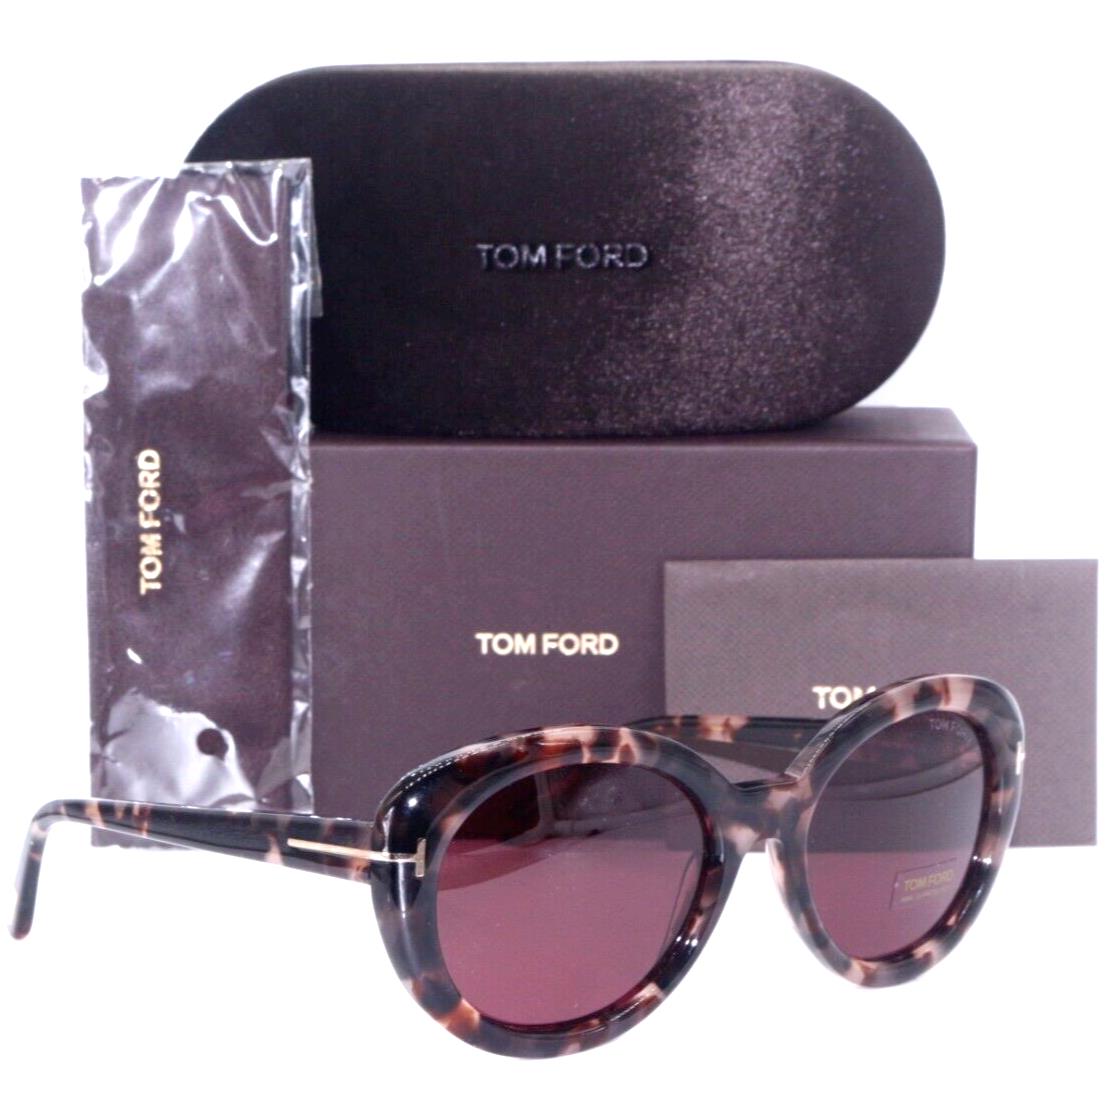 Tom Ford Sunglasses, Shop Tom Ford Sunglasses best brands